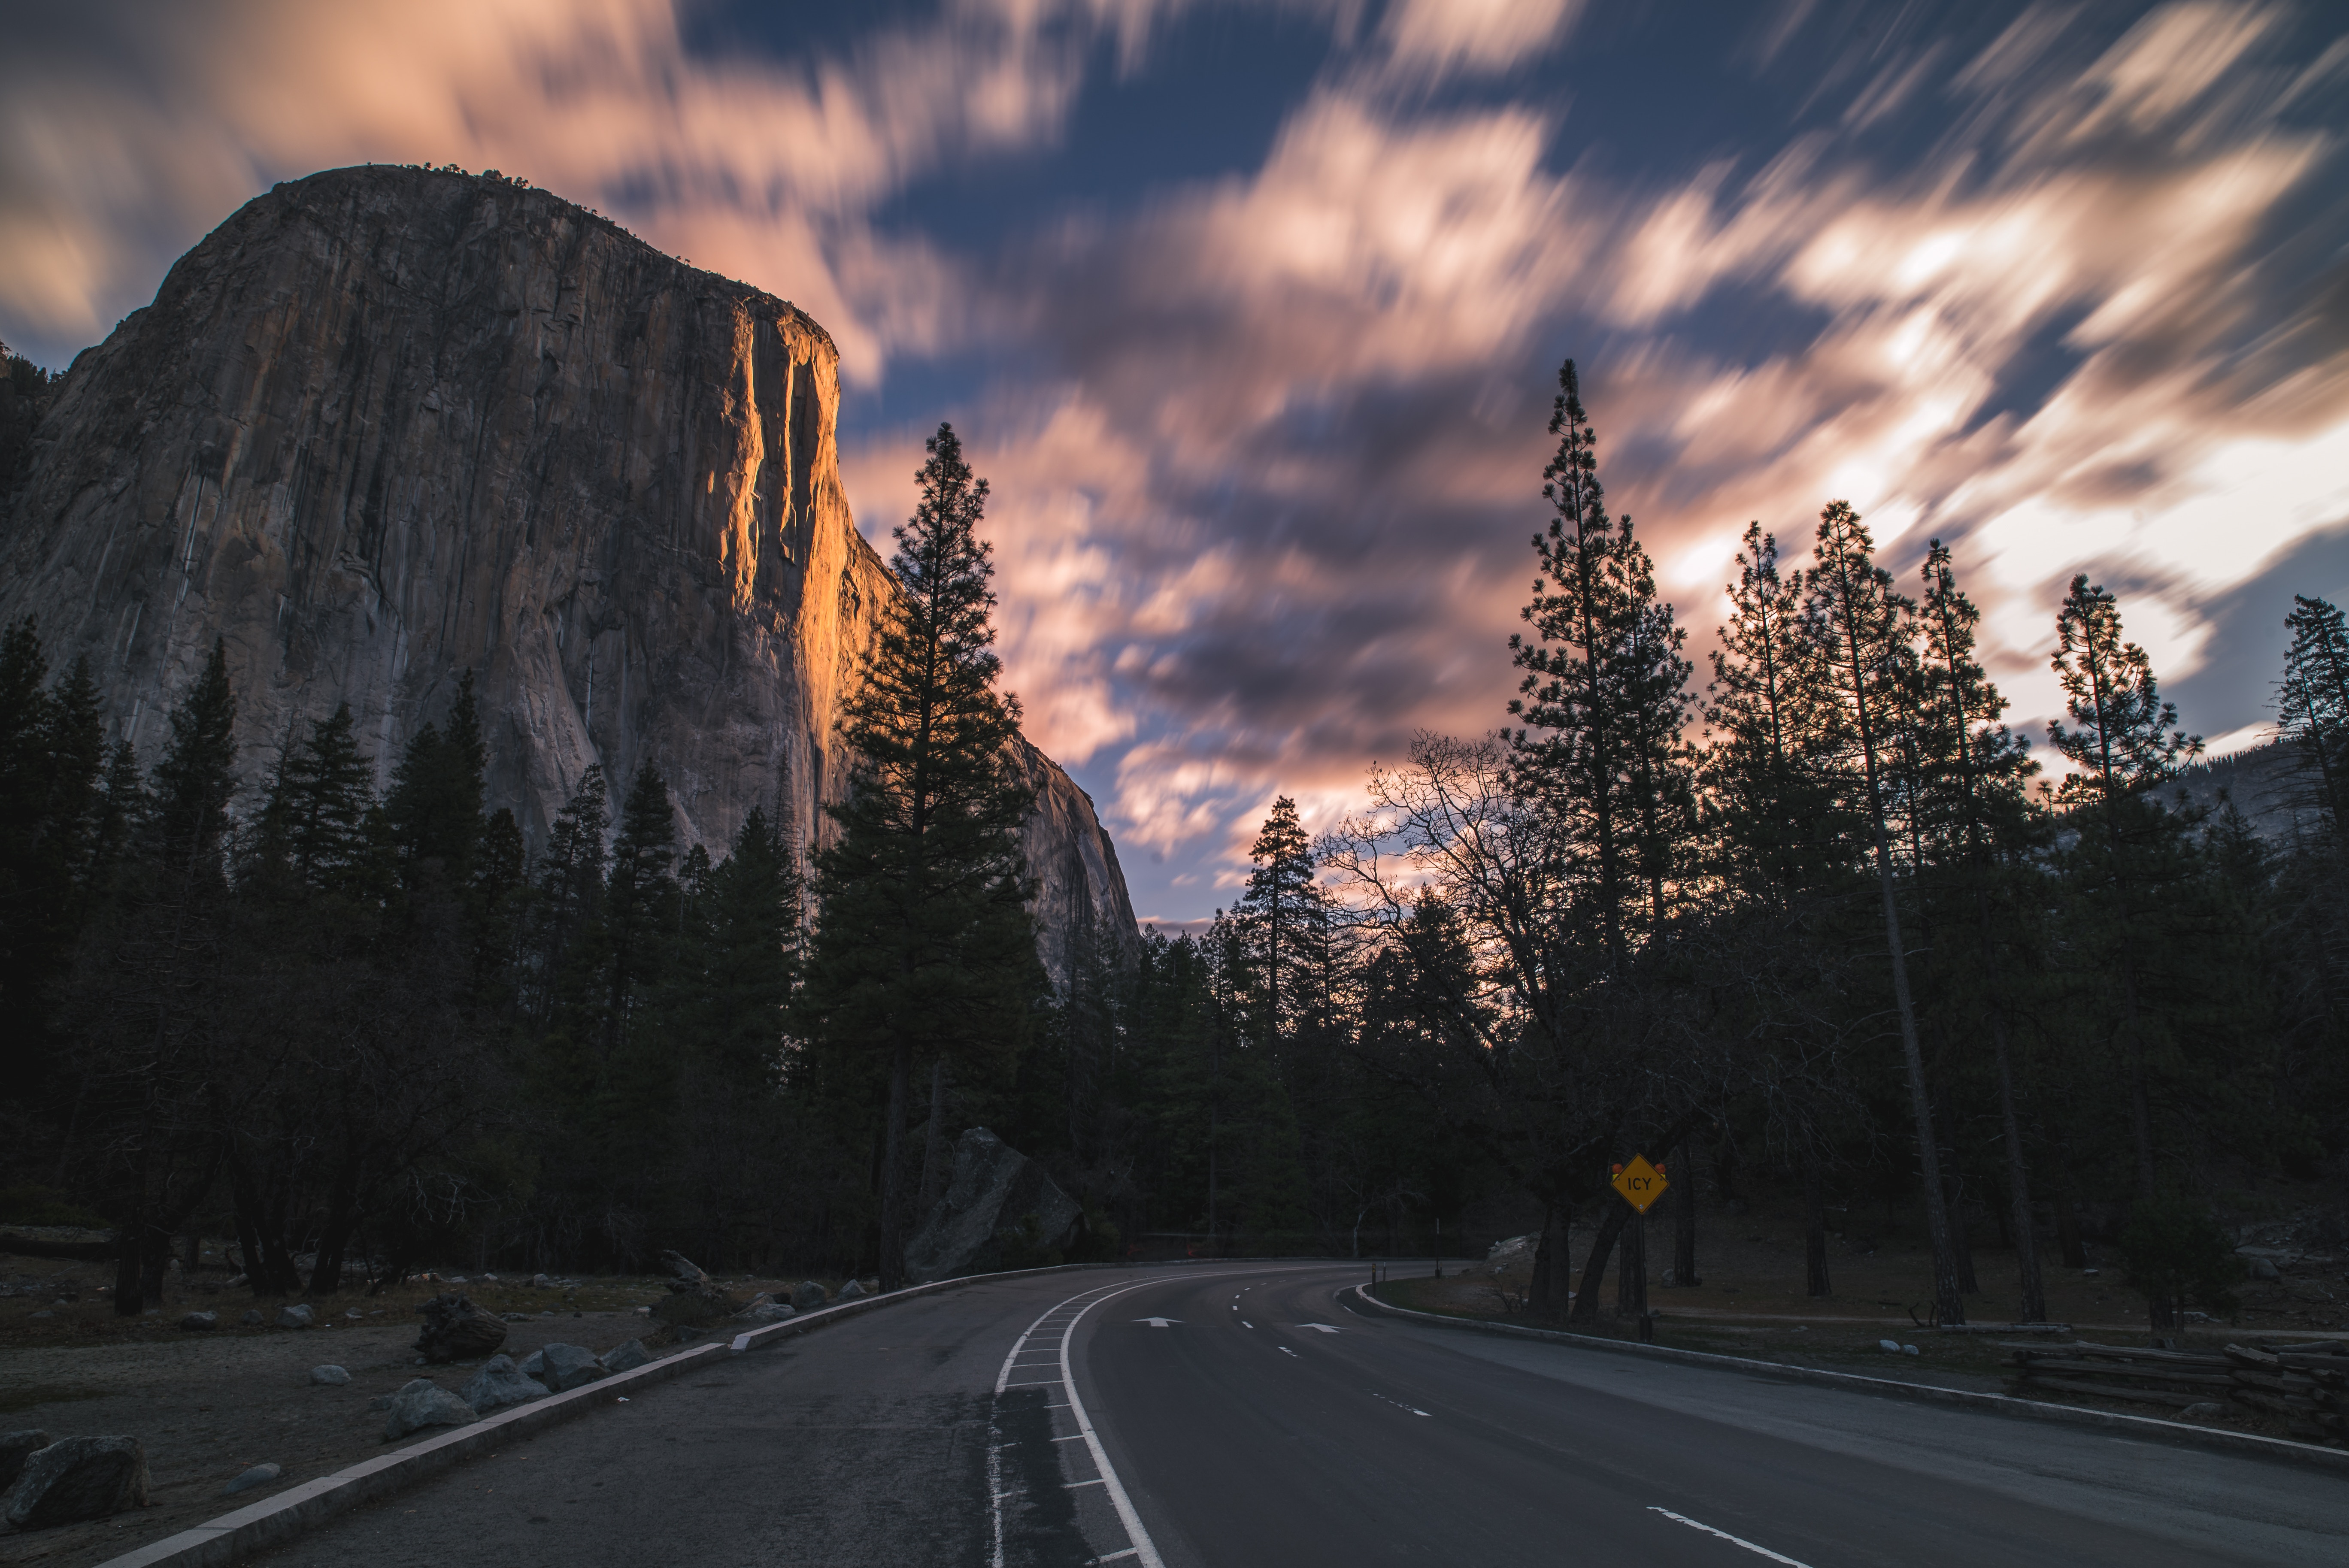 Обои рабочего стола 1366. Yosemite National Park дорога. Крутая природа. Горы фото красивые.